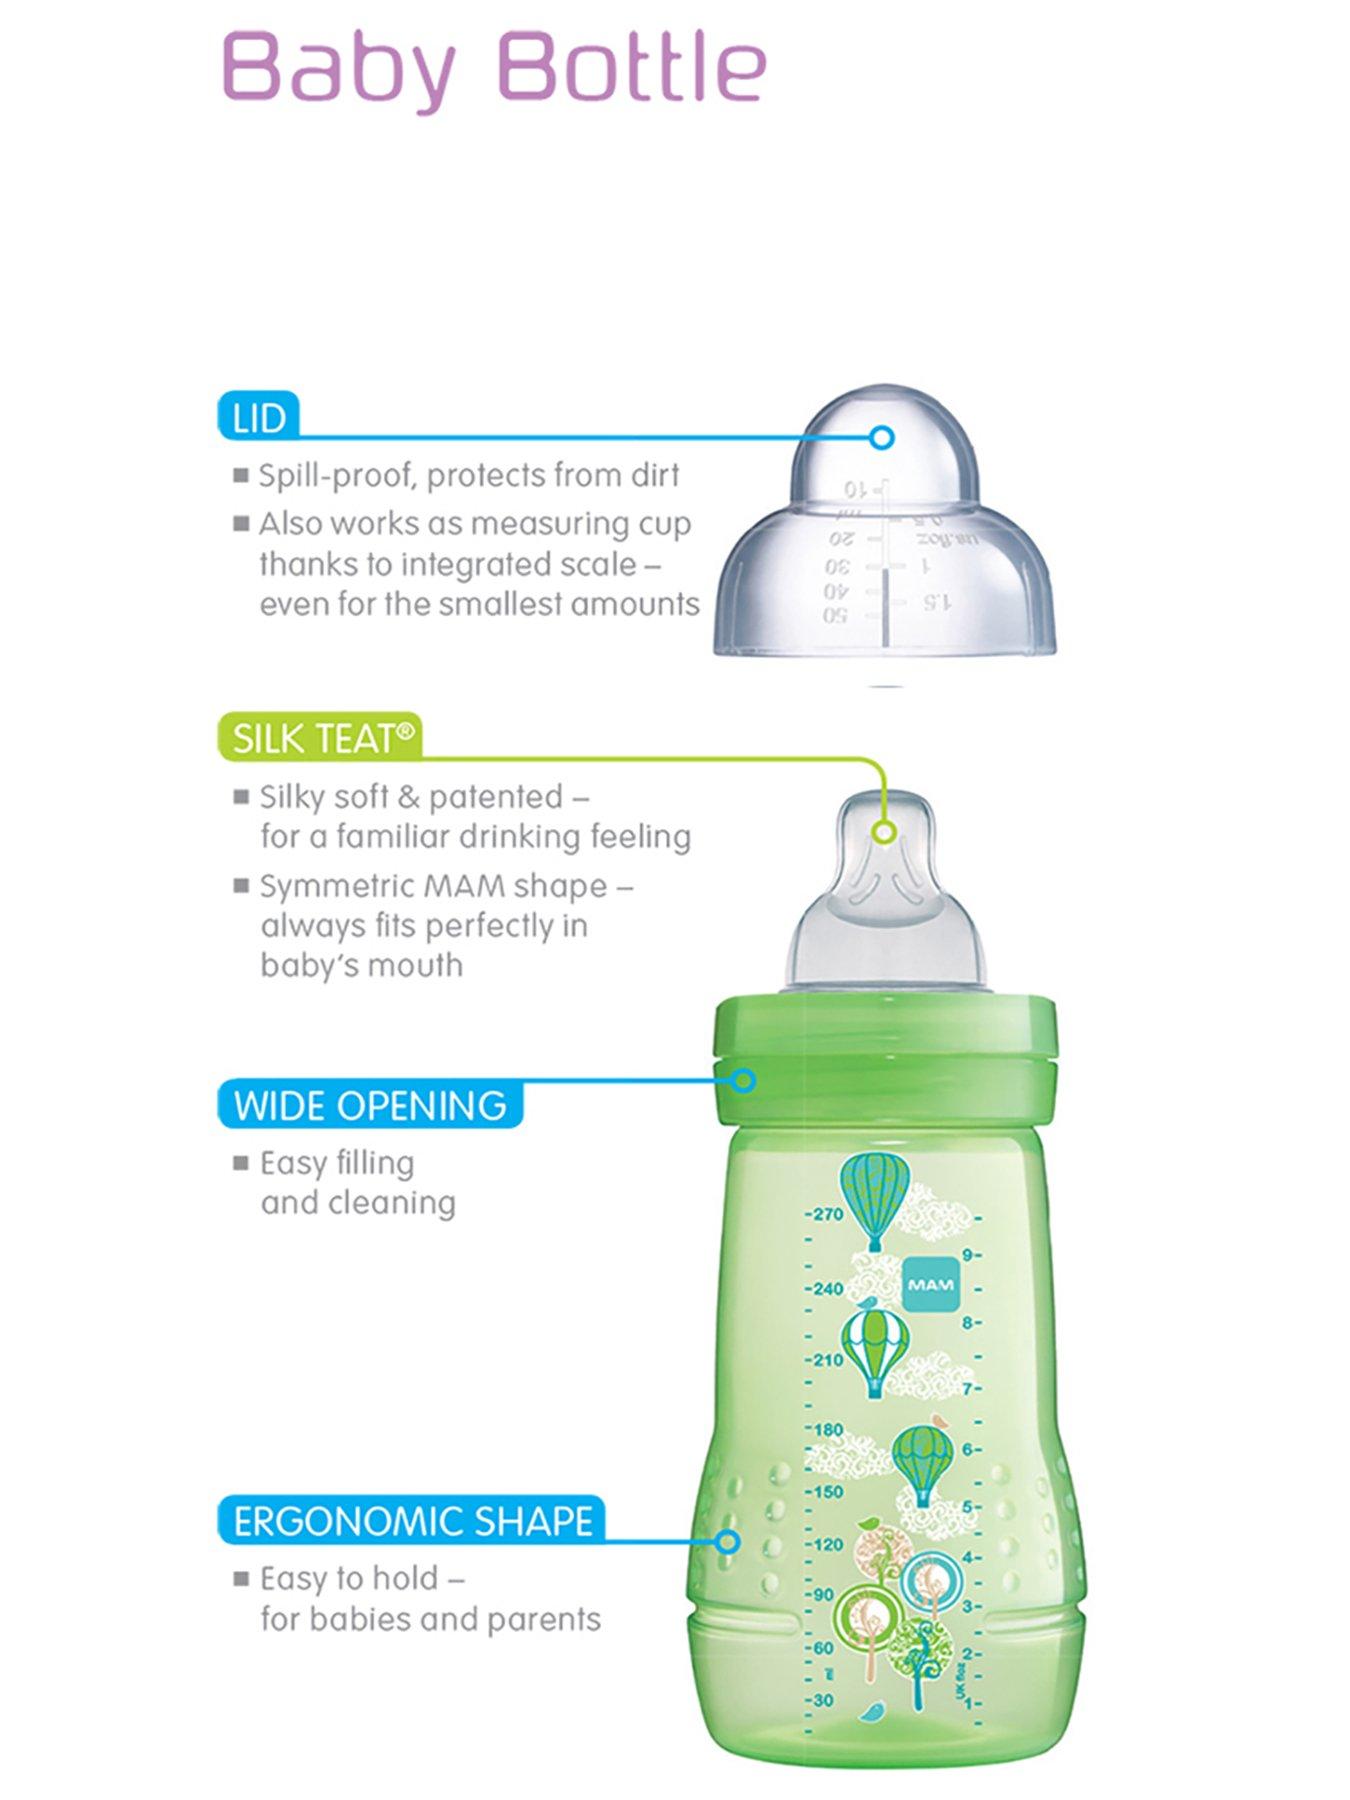 9 BRILLIANT BABY BOTTLE STORAGE IDEAS  Baby bottle storage, Baby bottle  organization, Best baby bottles